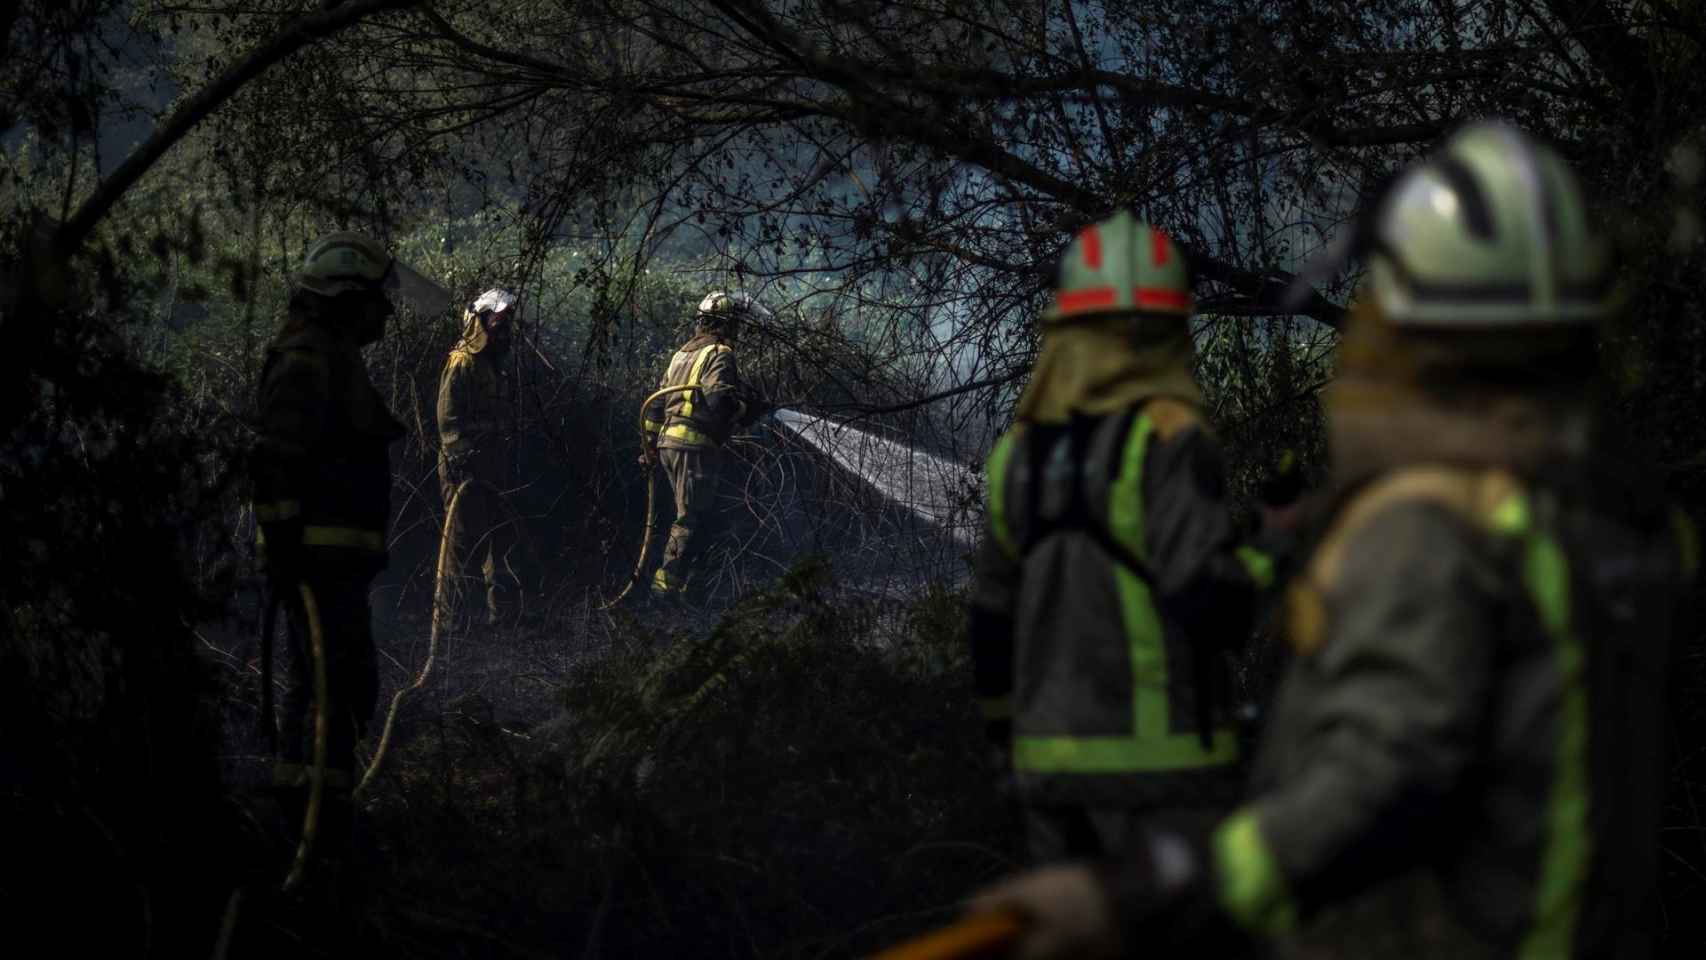 Los fuegos forestales continúan arrasando miles de hectáreas en Galicia, que vive desde el jueves una ola incendiaria que afecta principalmente a las provincias de Ourense y Lugo / EFE - BRAIS LORENZO